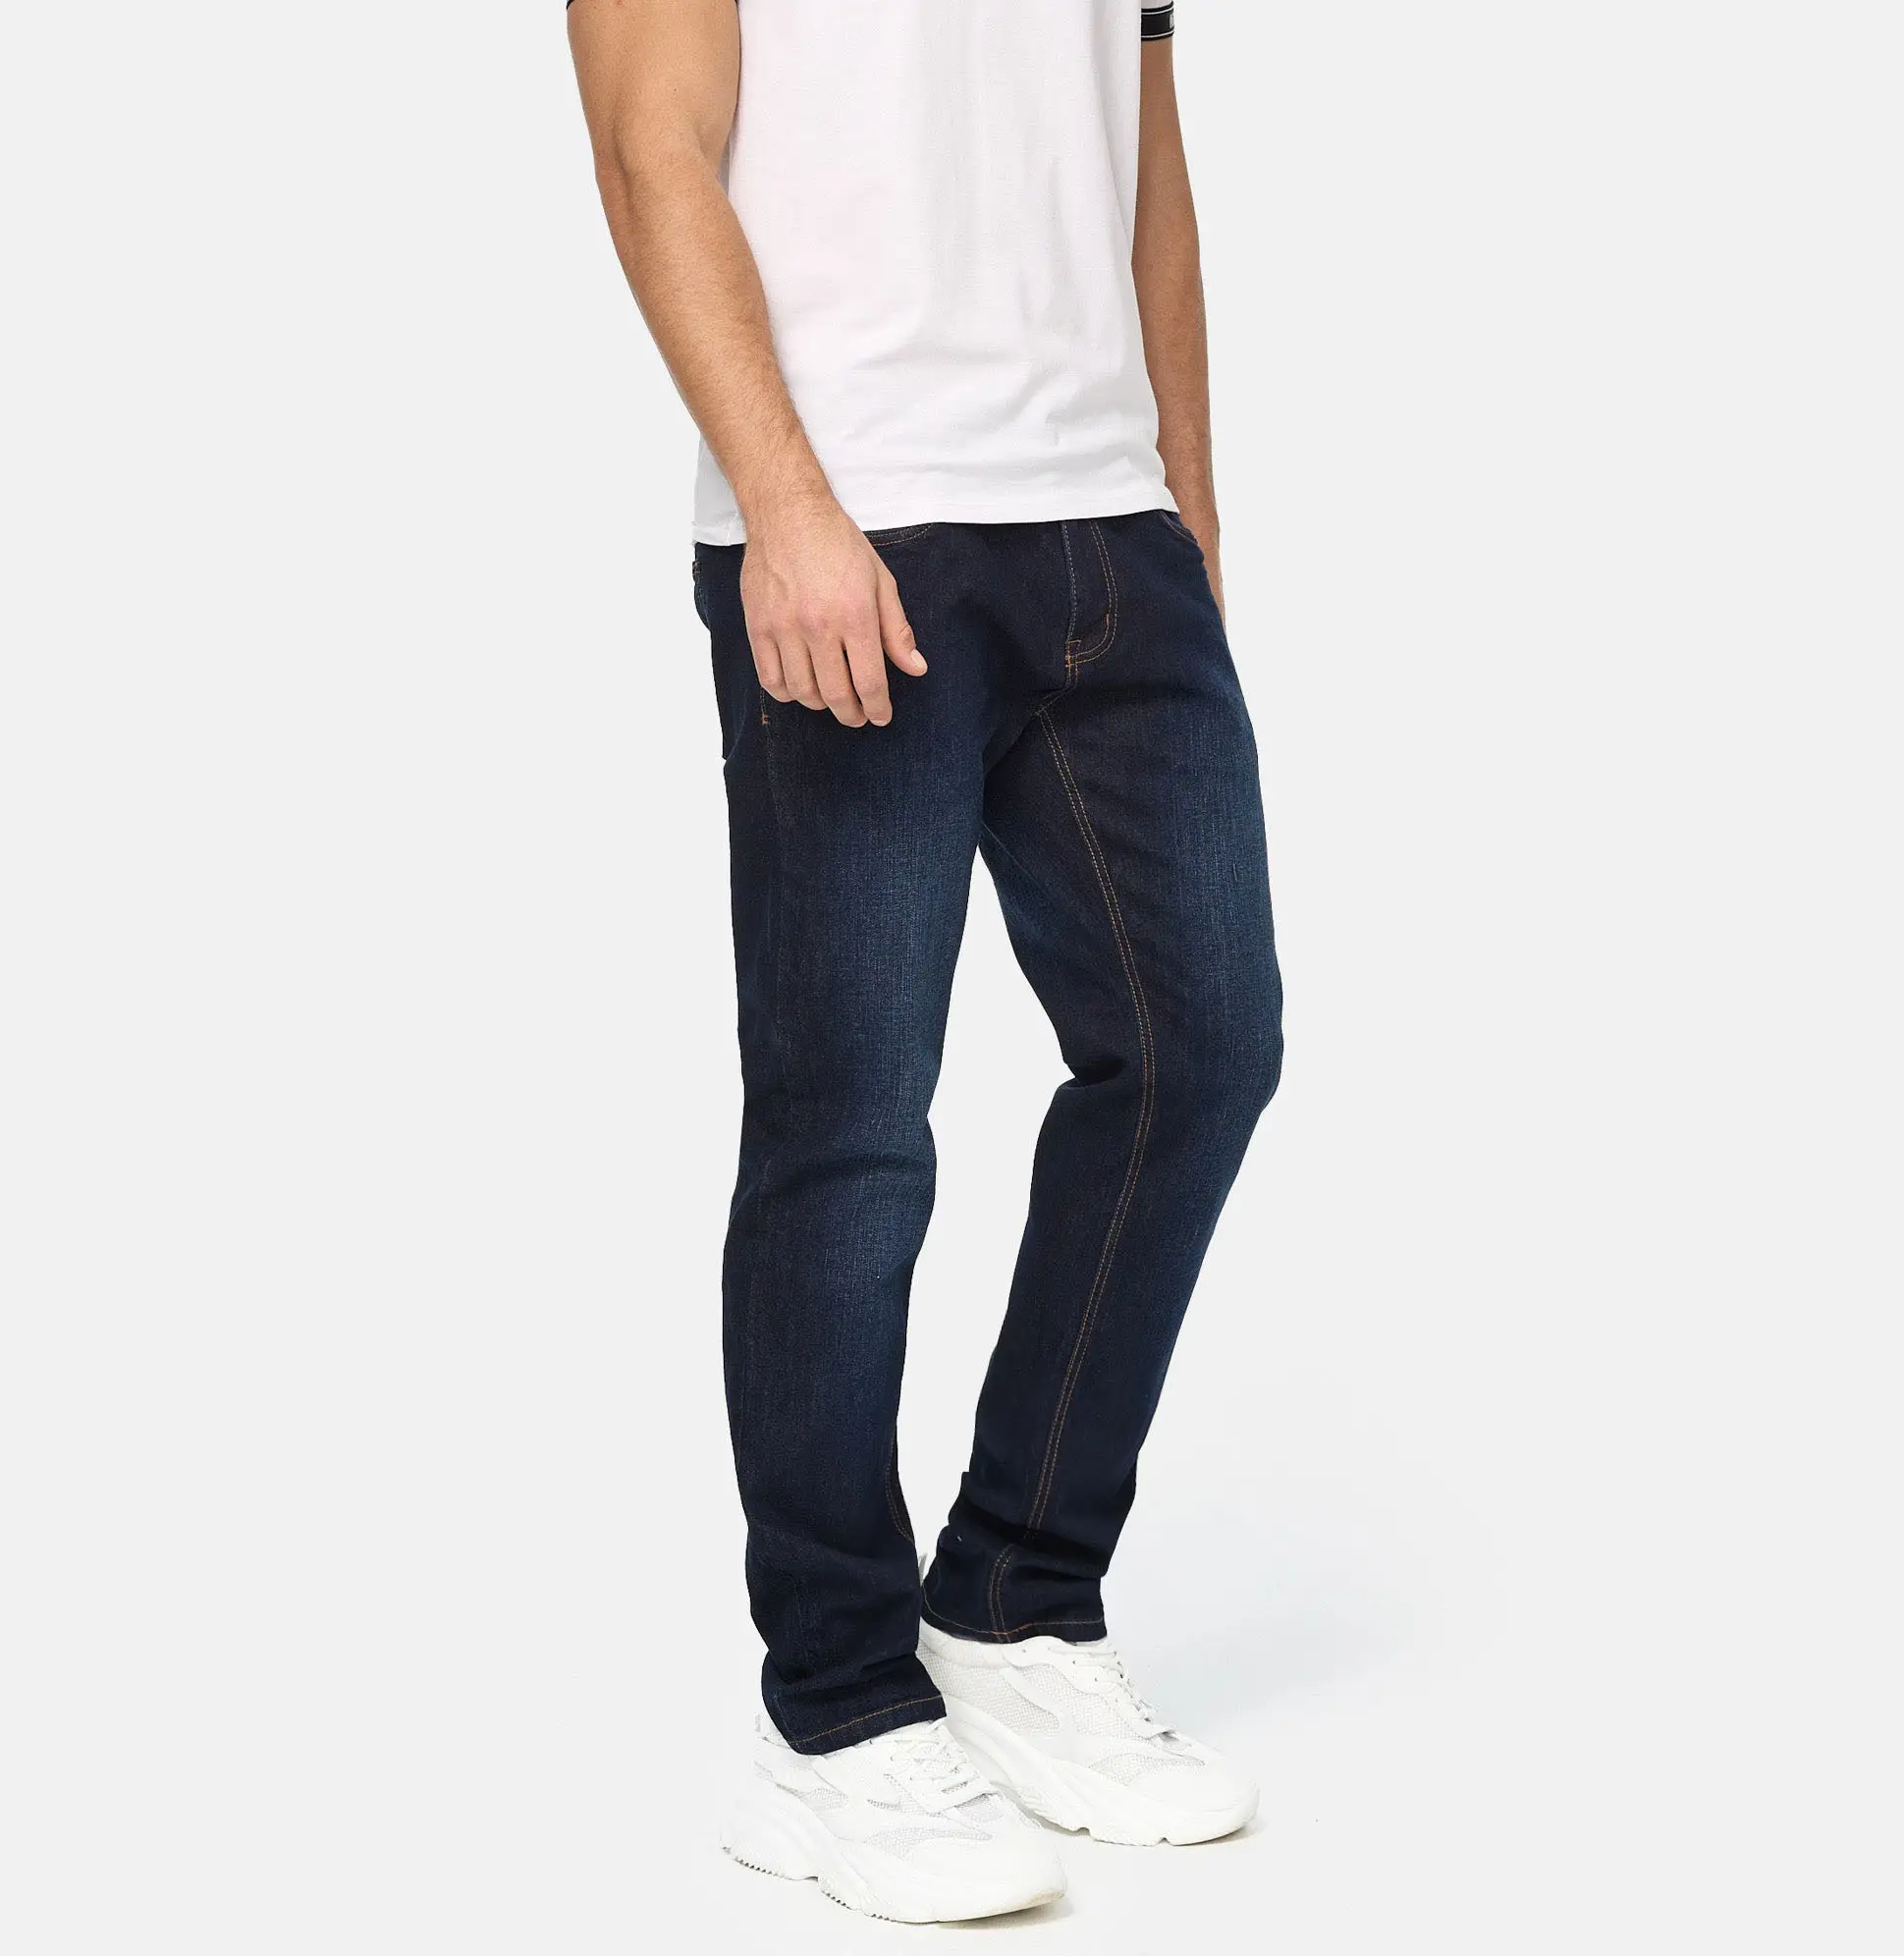 Meilleure vente design pas cher prix adoucissant 100% coton décontracté blanc jean hommes jean denim pantalon